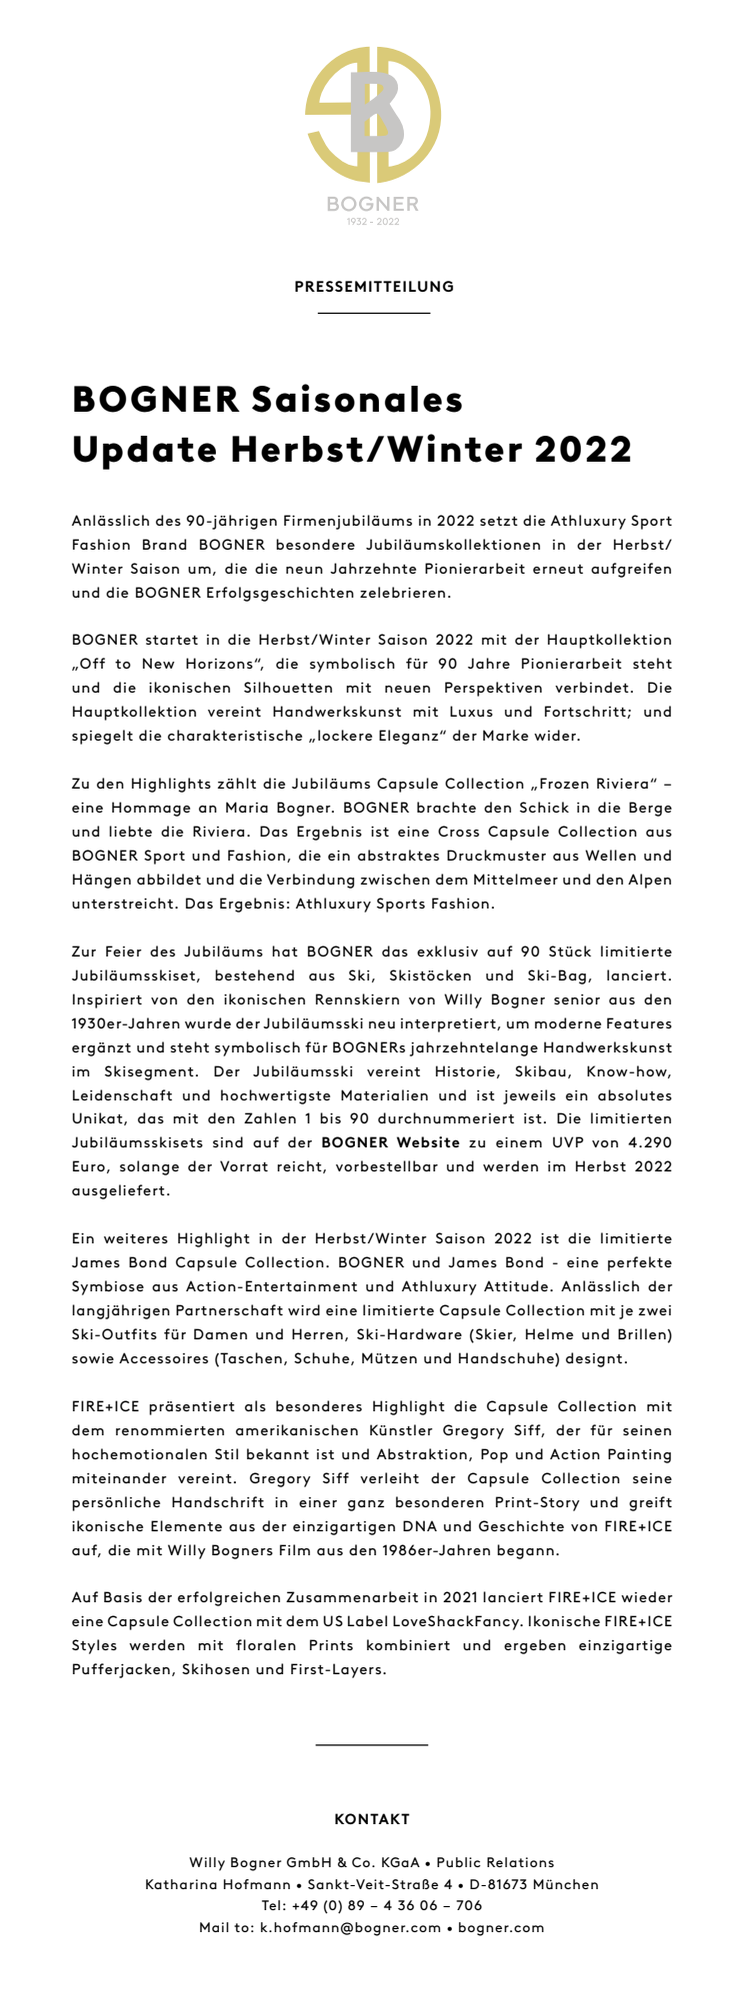 BOGNER_Pressemitteilung_Saisonales Update Herbst Winter 2022.pdf